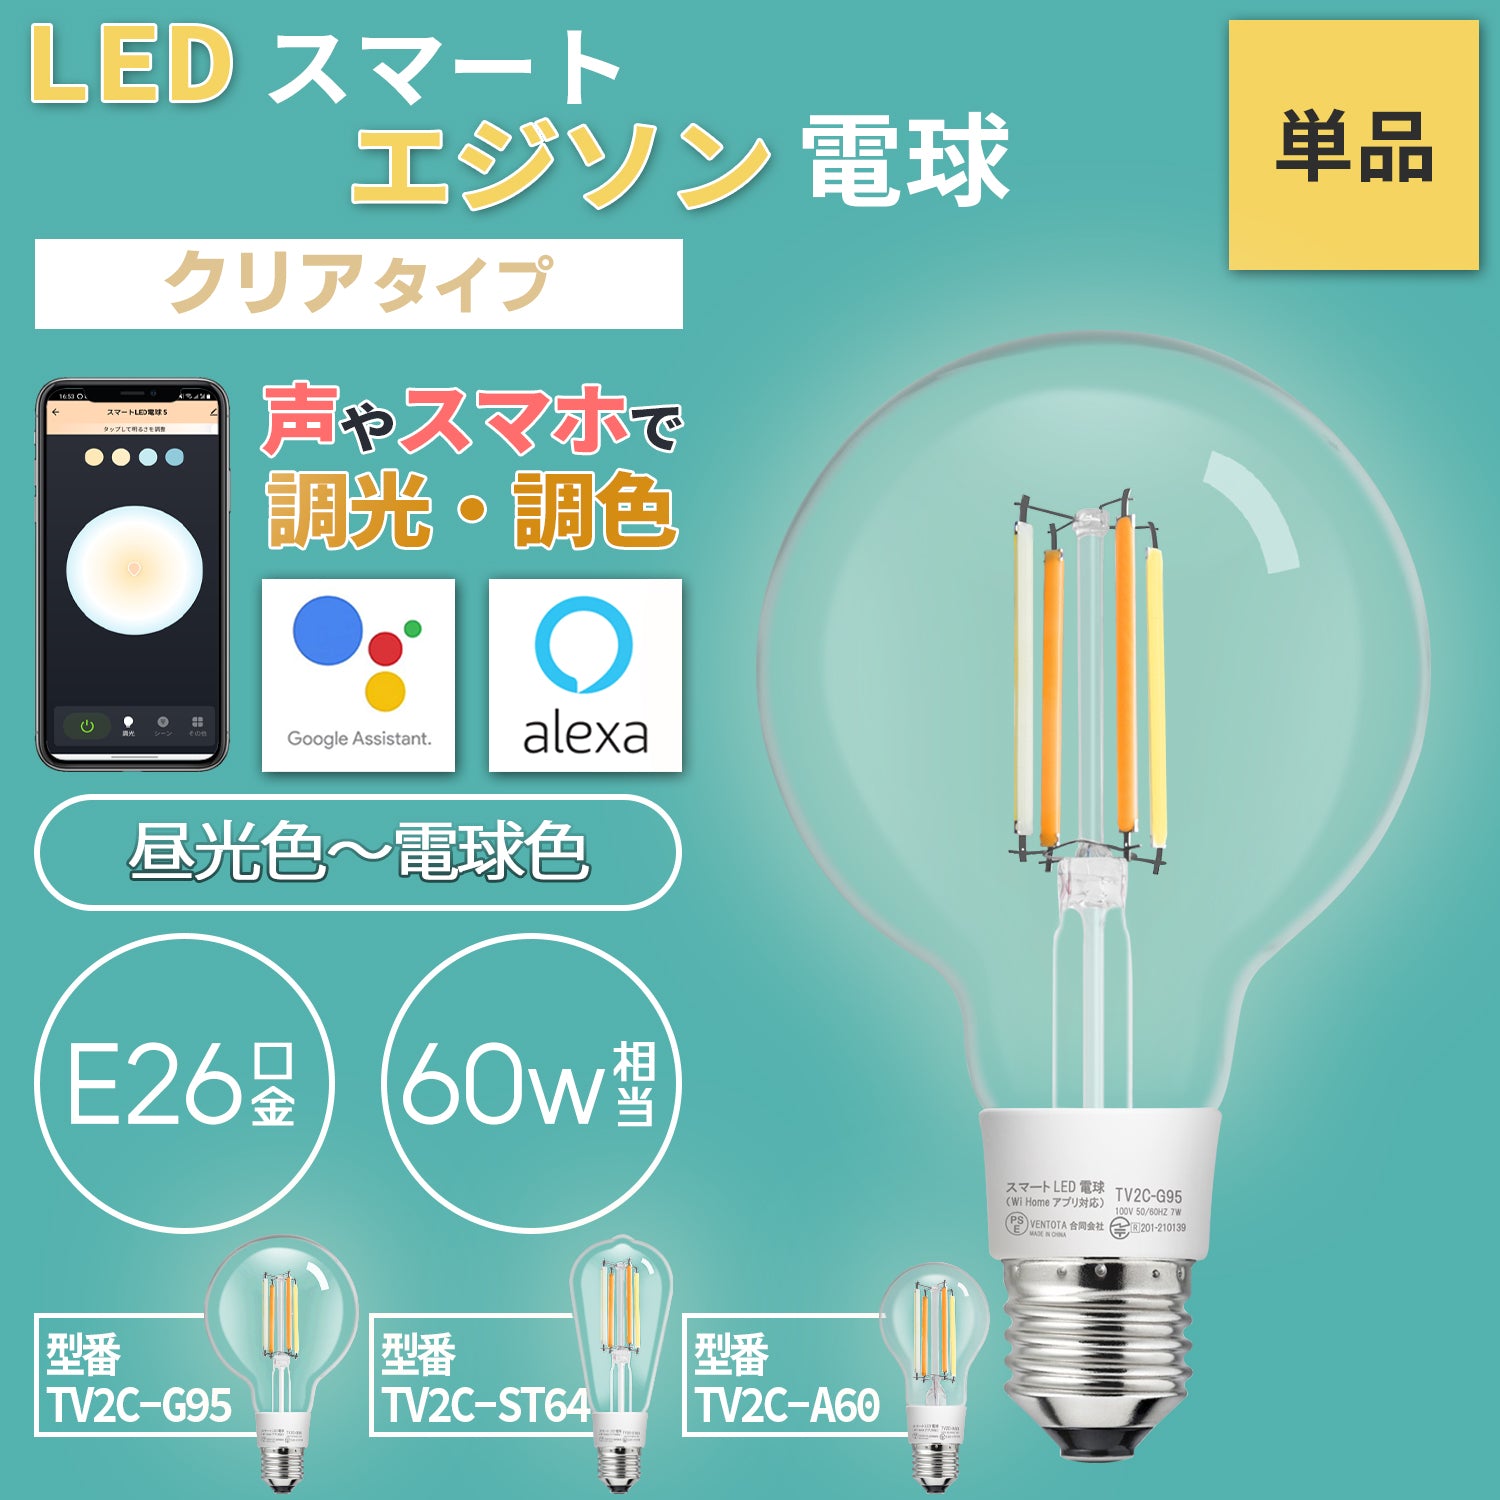 Alexa Google Home 対応 スマート 照明 エジソン型LED電球 E26 60w相当